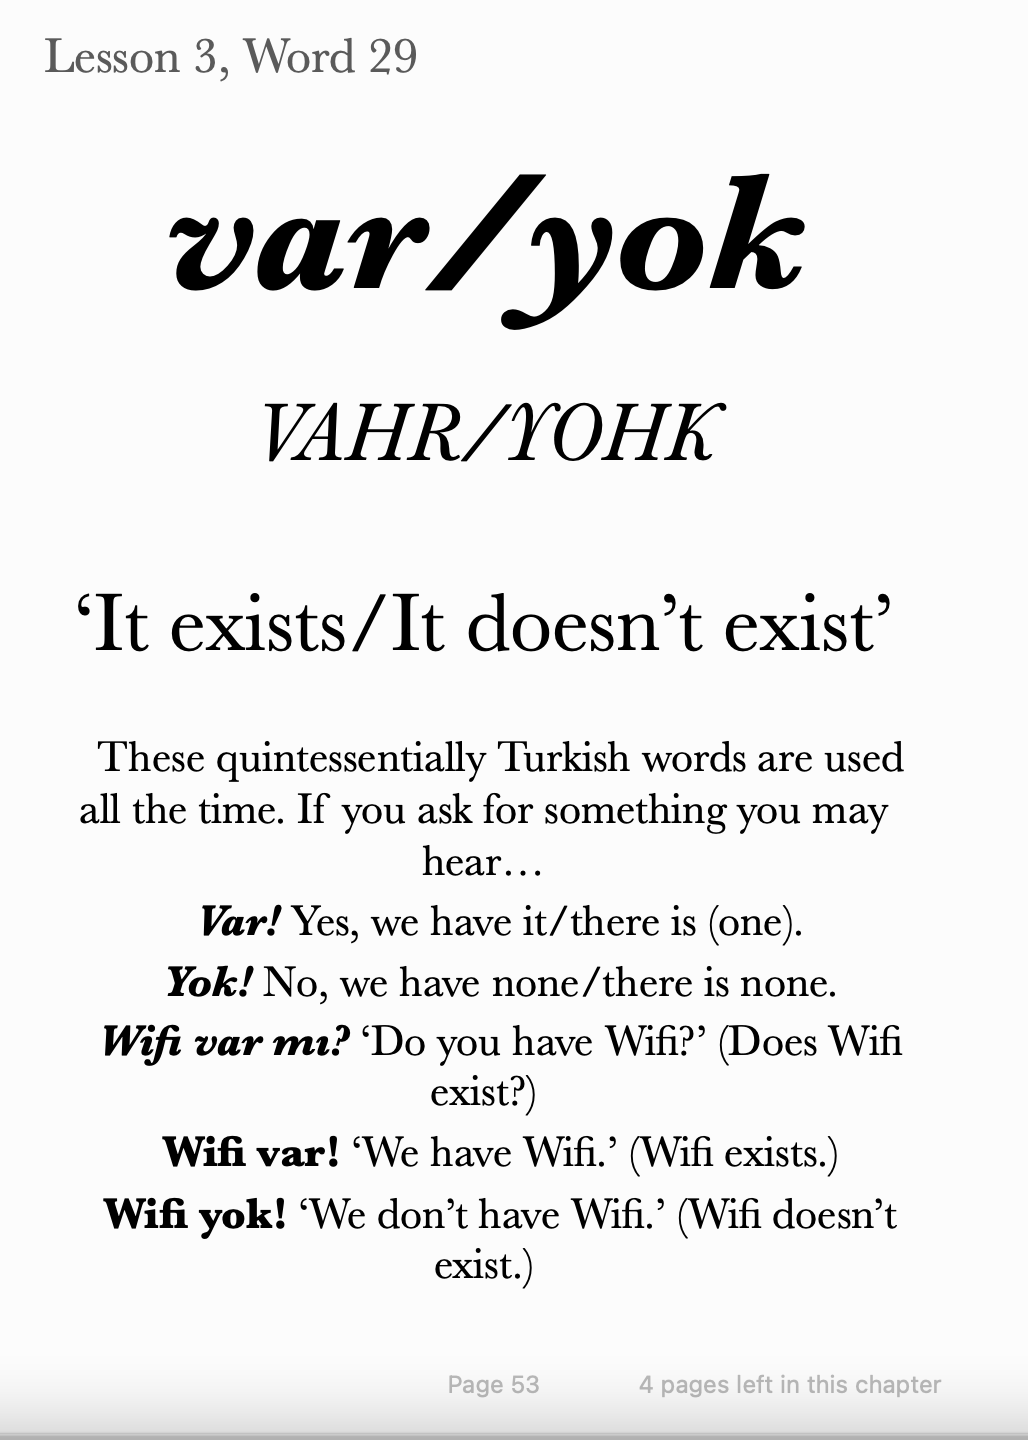 100 Travel Words - Turkish